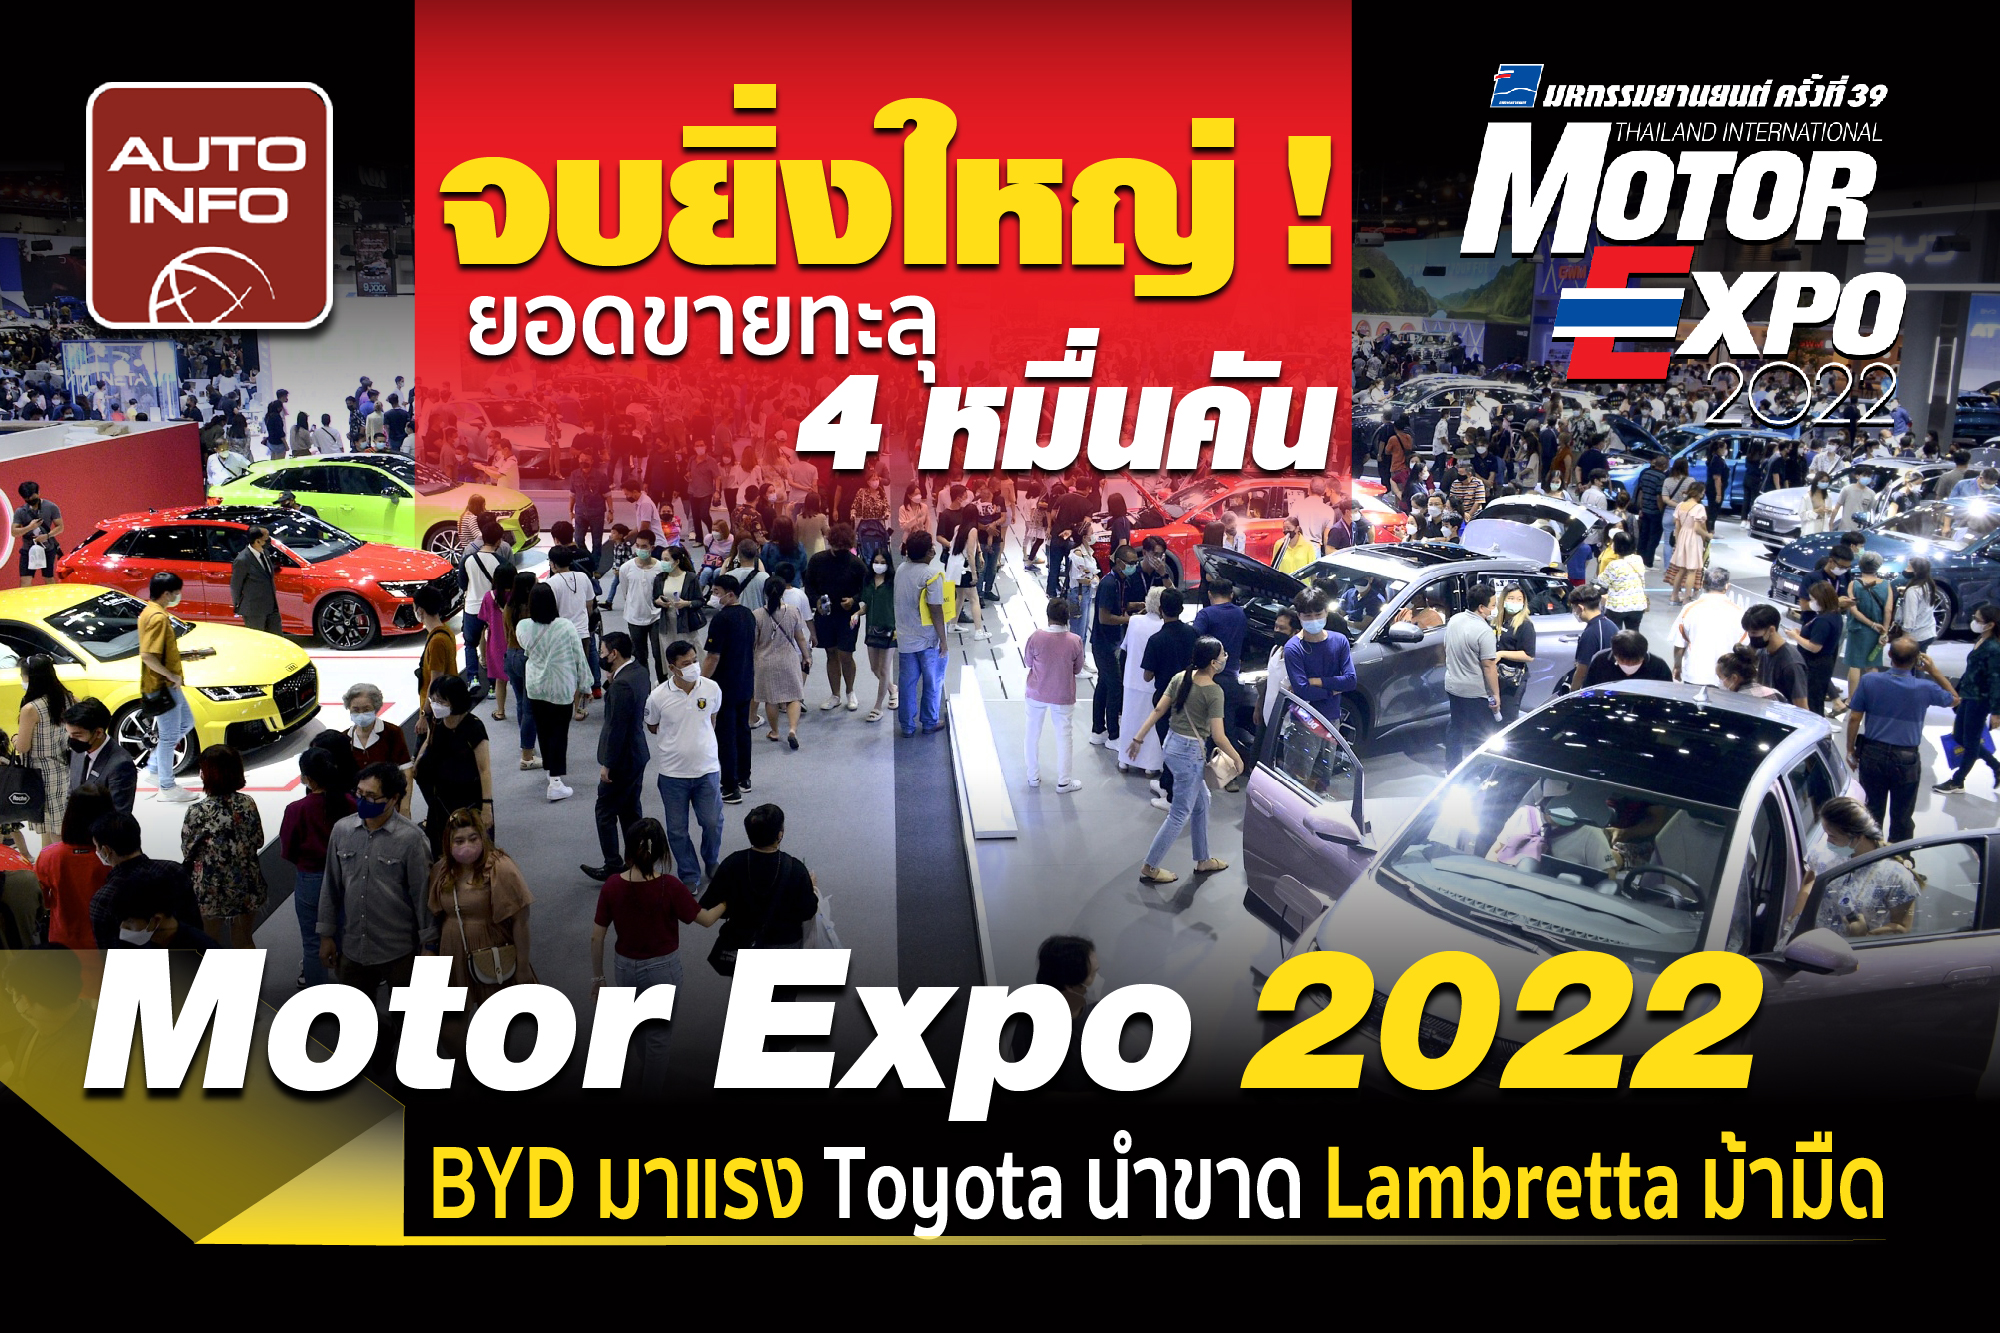 จบยิ่งใหญ่ ! Motor Expo 2022 ยอดขายทะลุ 4 หมื่นคัน BYD มาแรง Toyota นำขาด Lambretta ม้ามืด